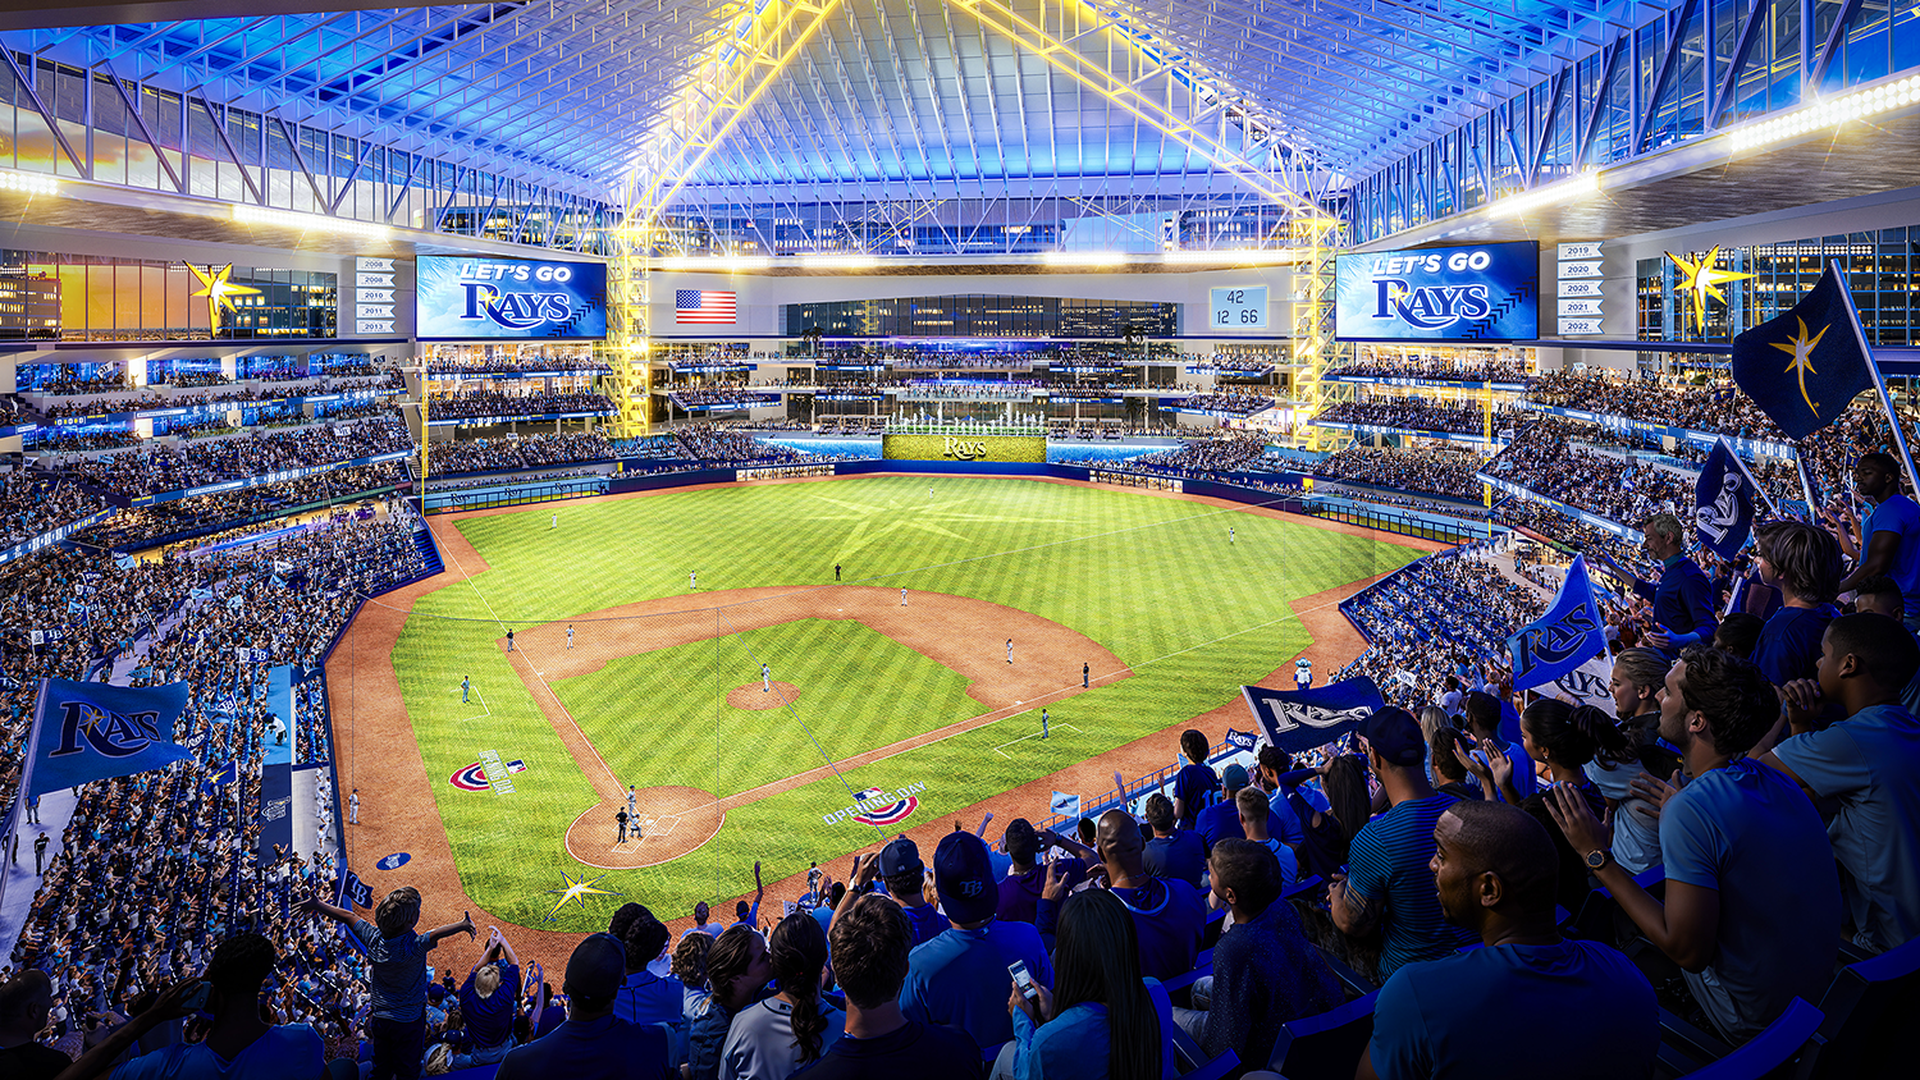 rendering of inside of baseball stadium